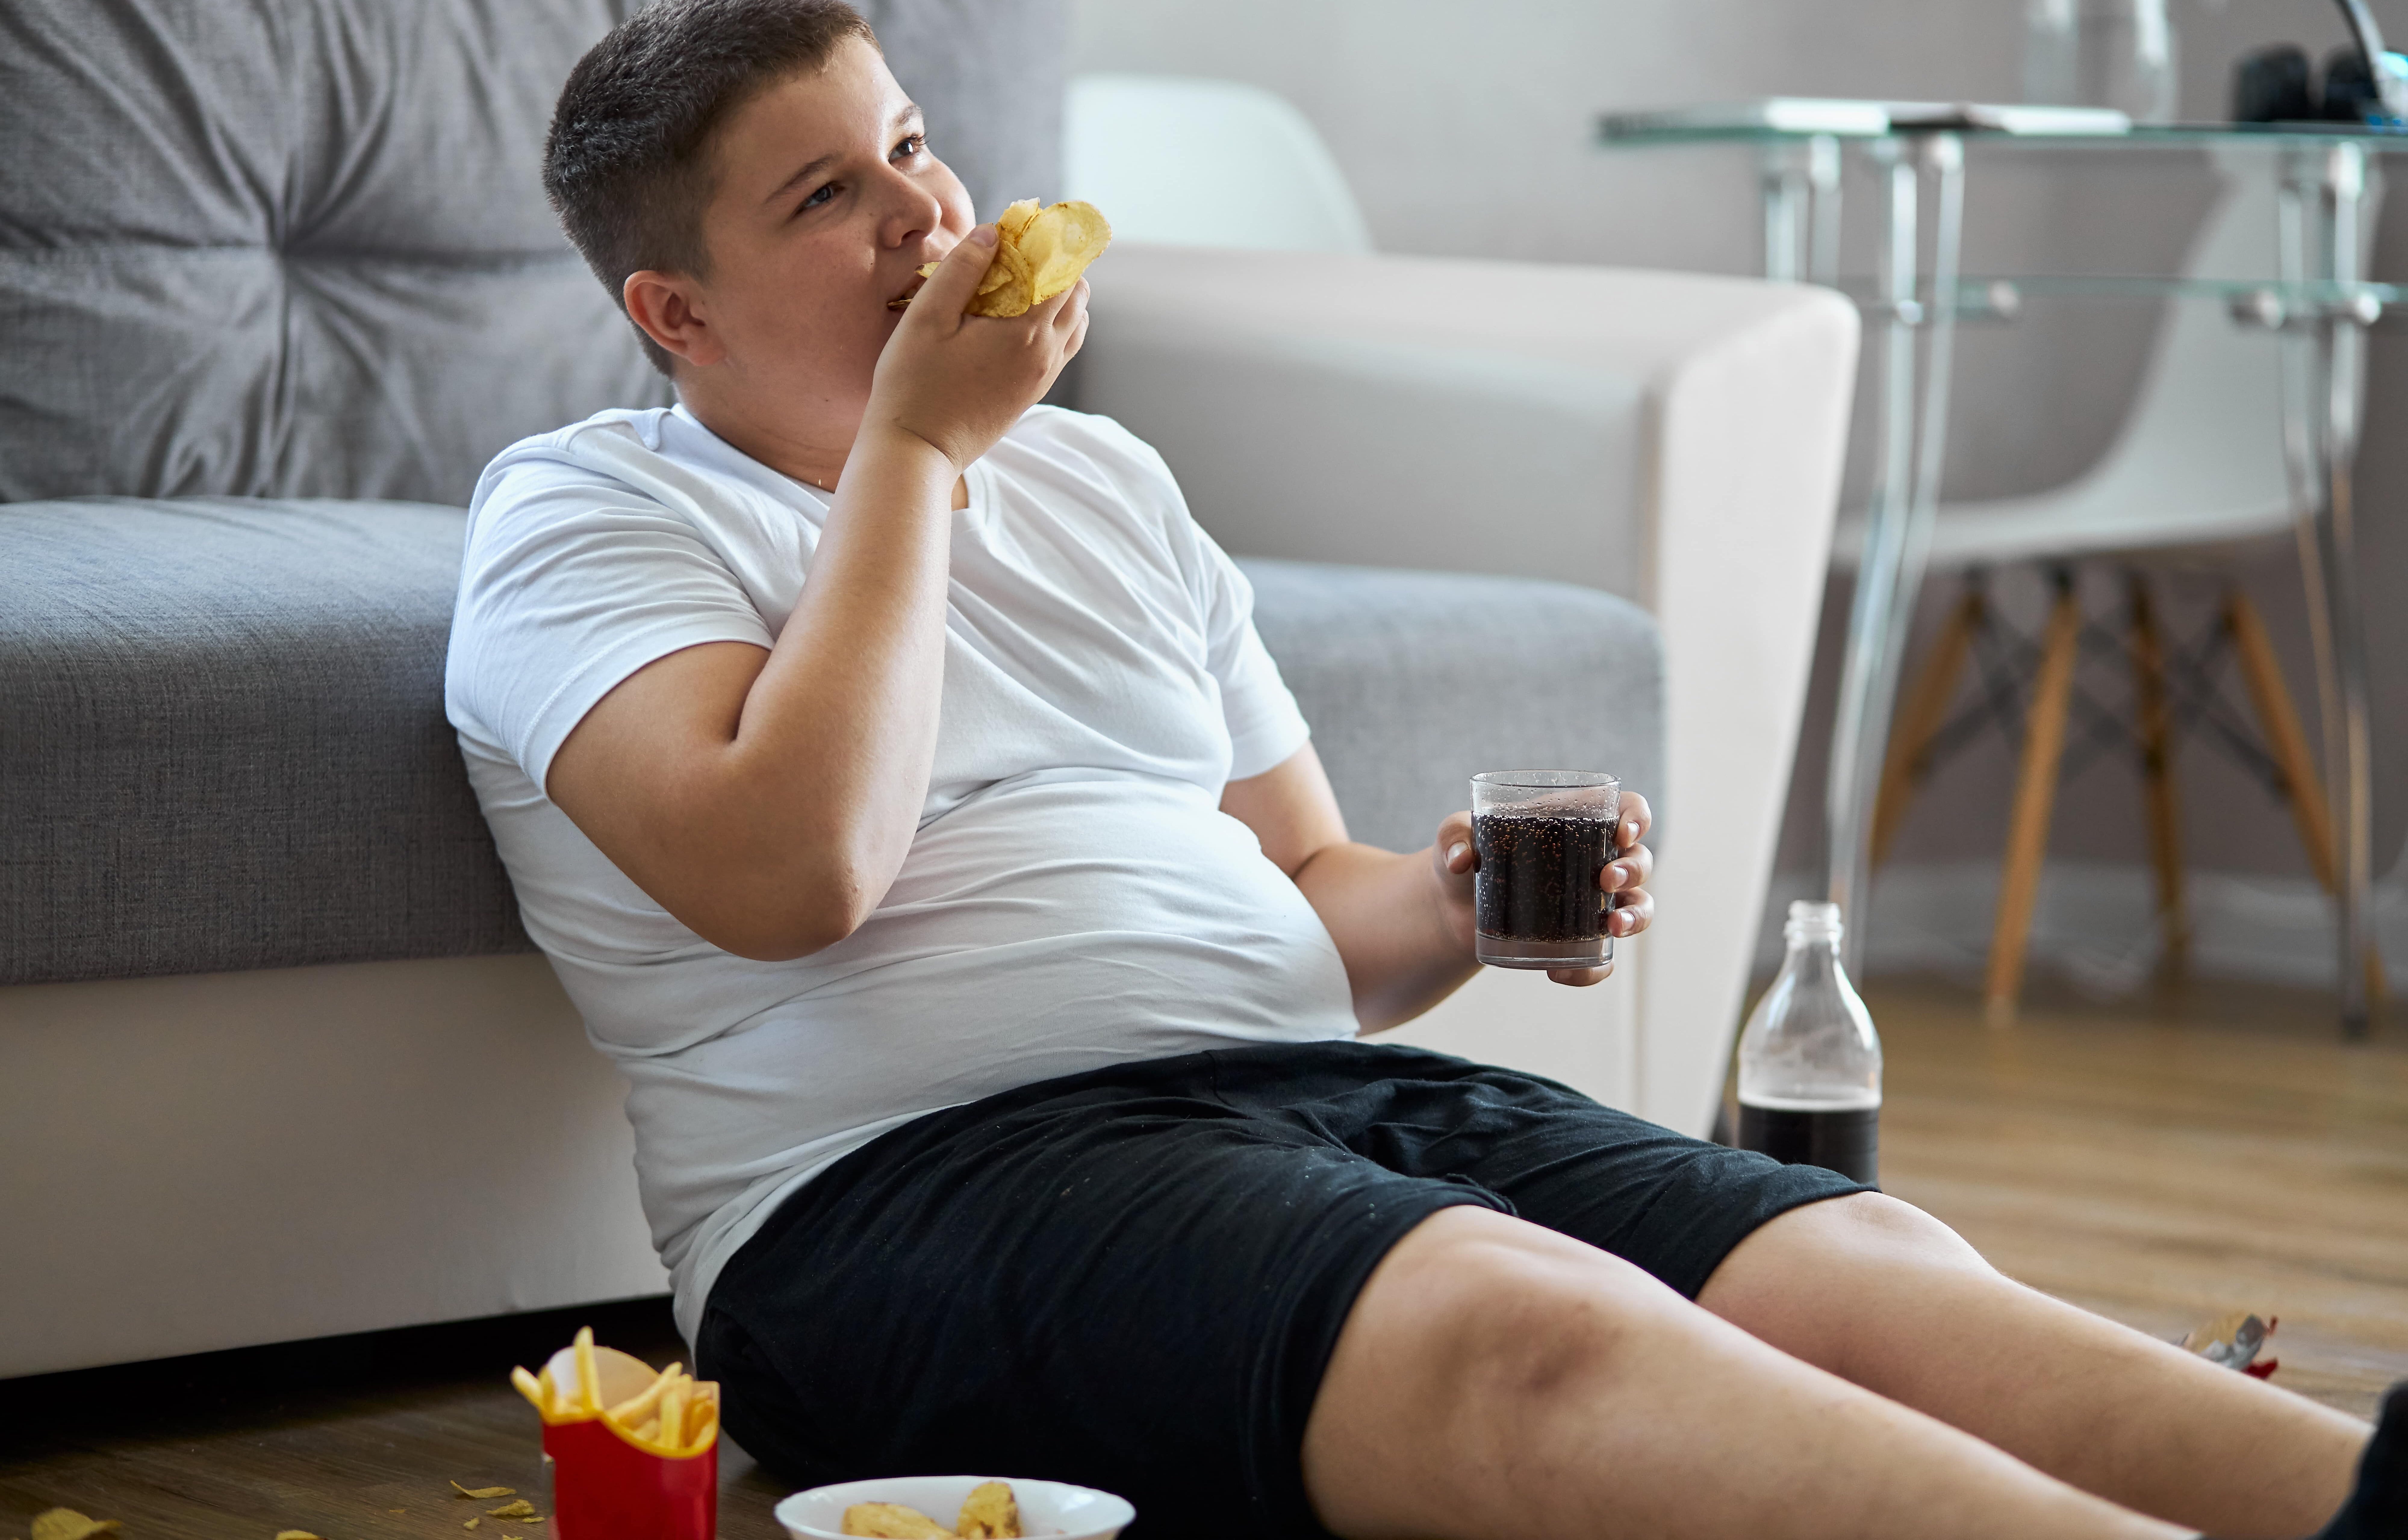 */Adolescentes com diabetes tipo 1: 25% estão acima do peso